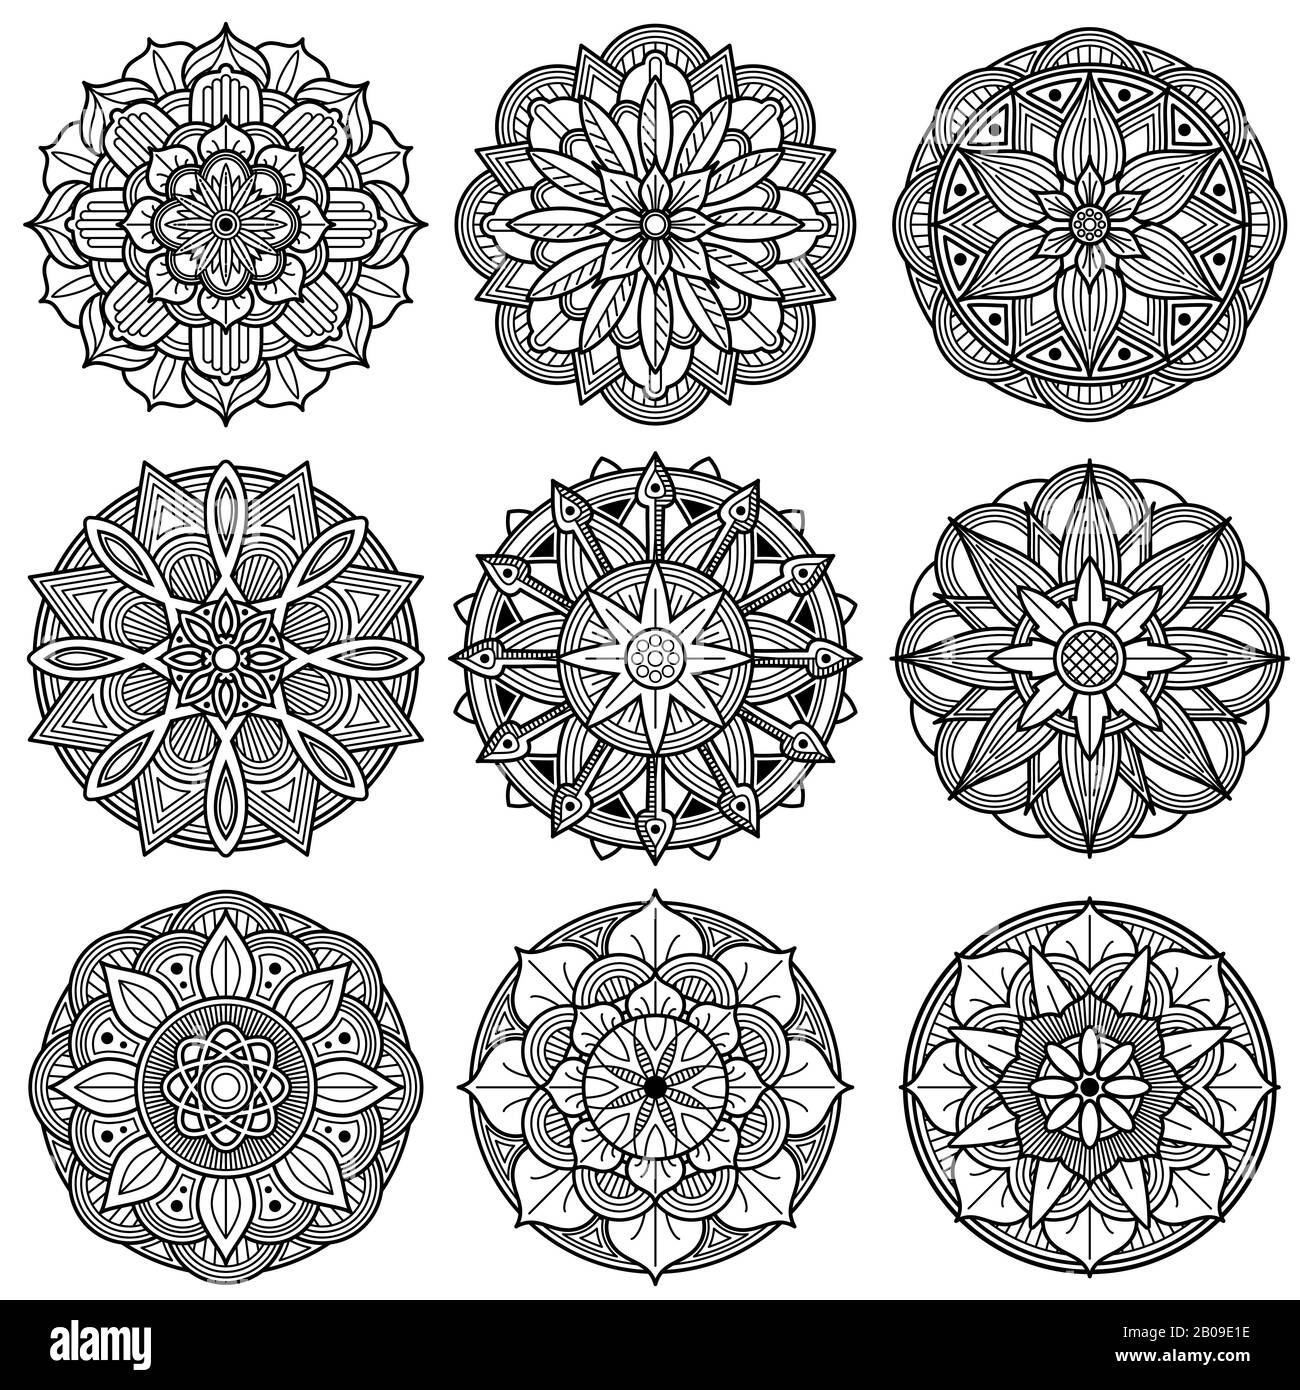 Meditazione indiana mandala modelli vettore. Set di mandala indiana monocromatica. Illustrazione di mandala floreale Illustrazione Vettoriale